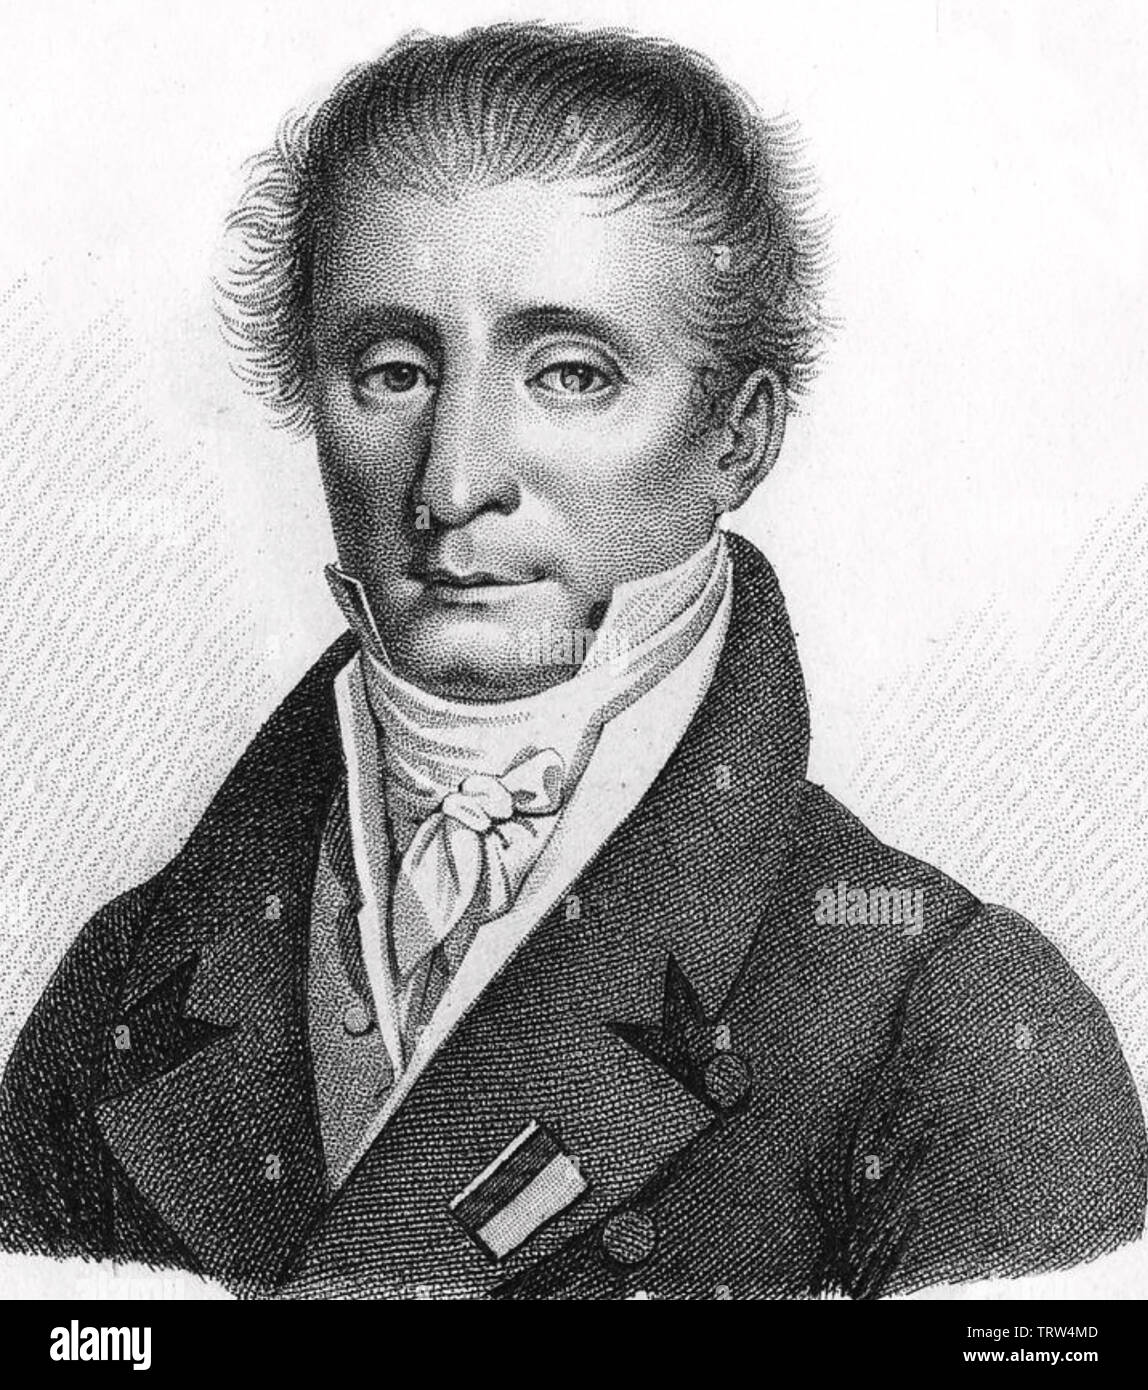 AMBROISE TARDIEU (1788-1841), cartographe français Banque D'Images